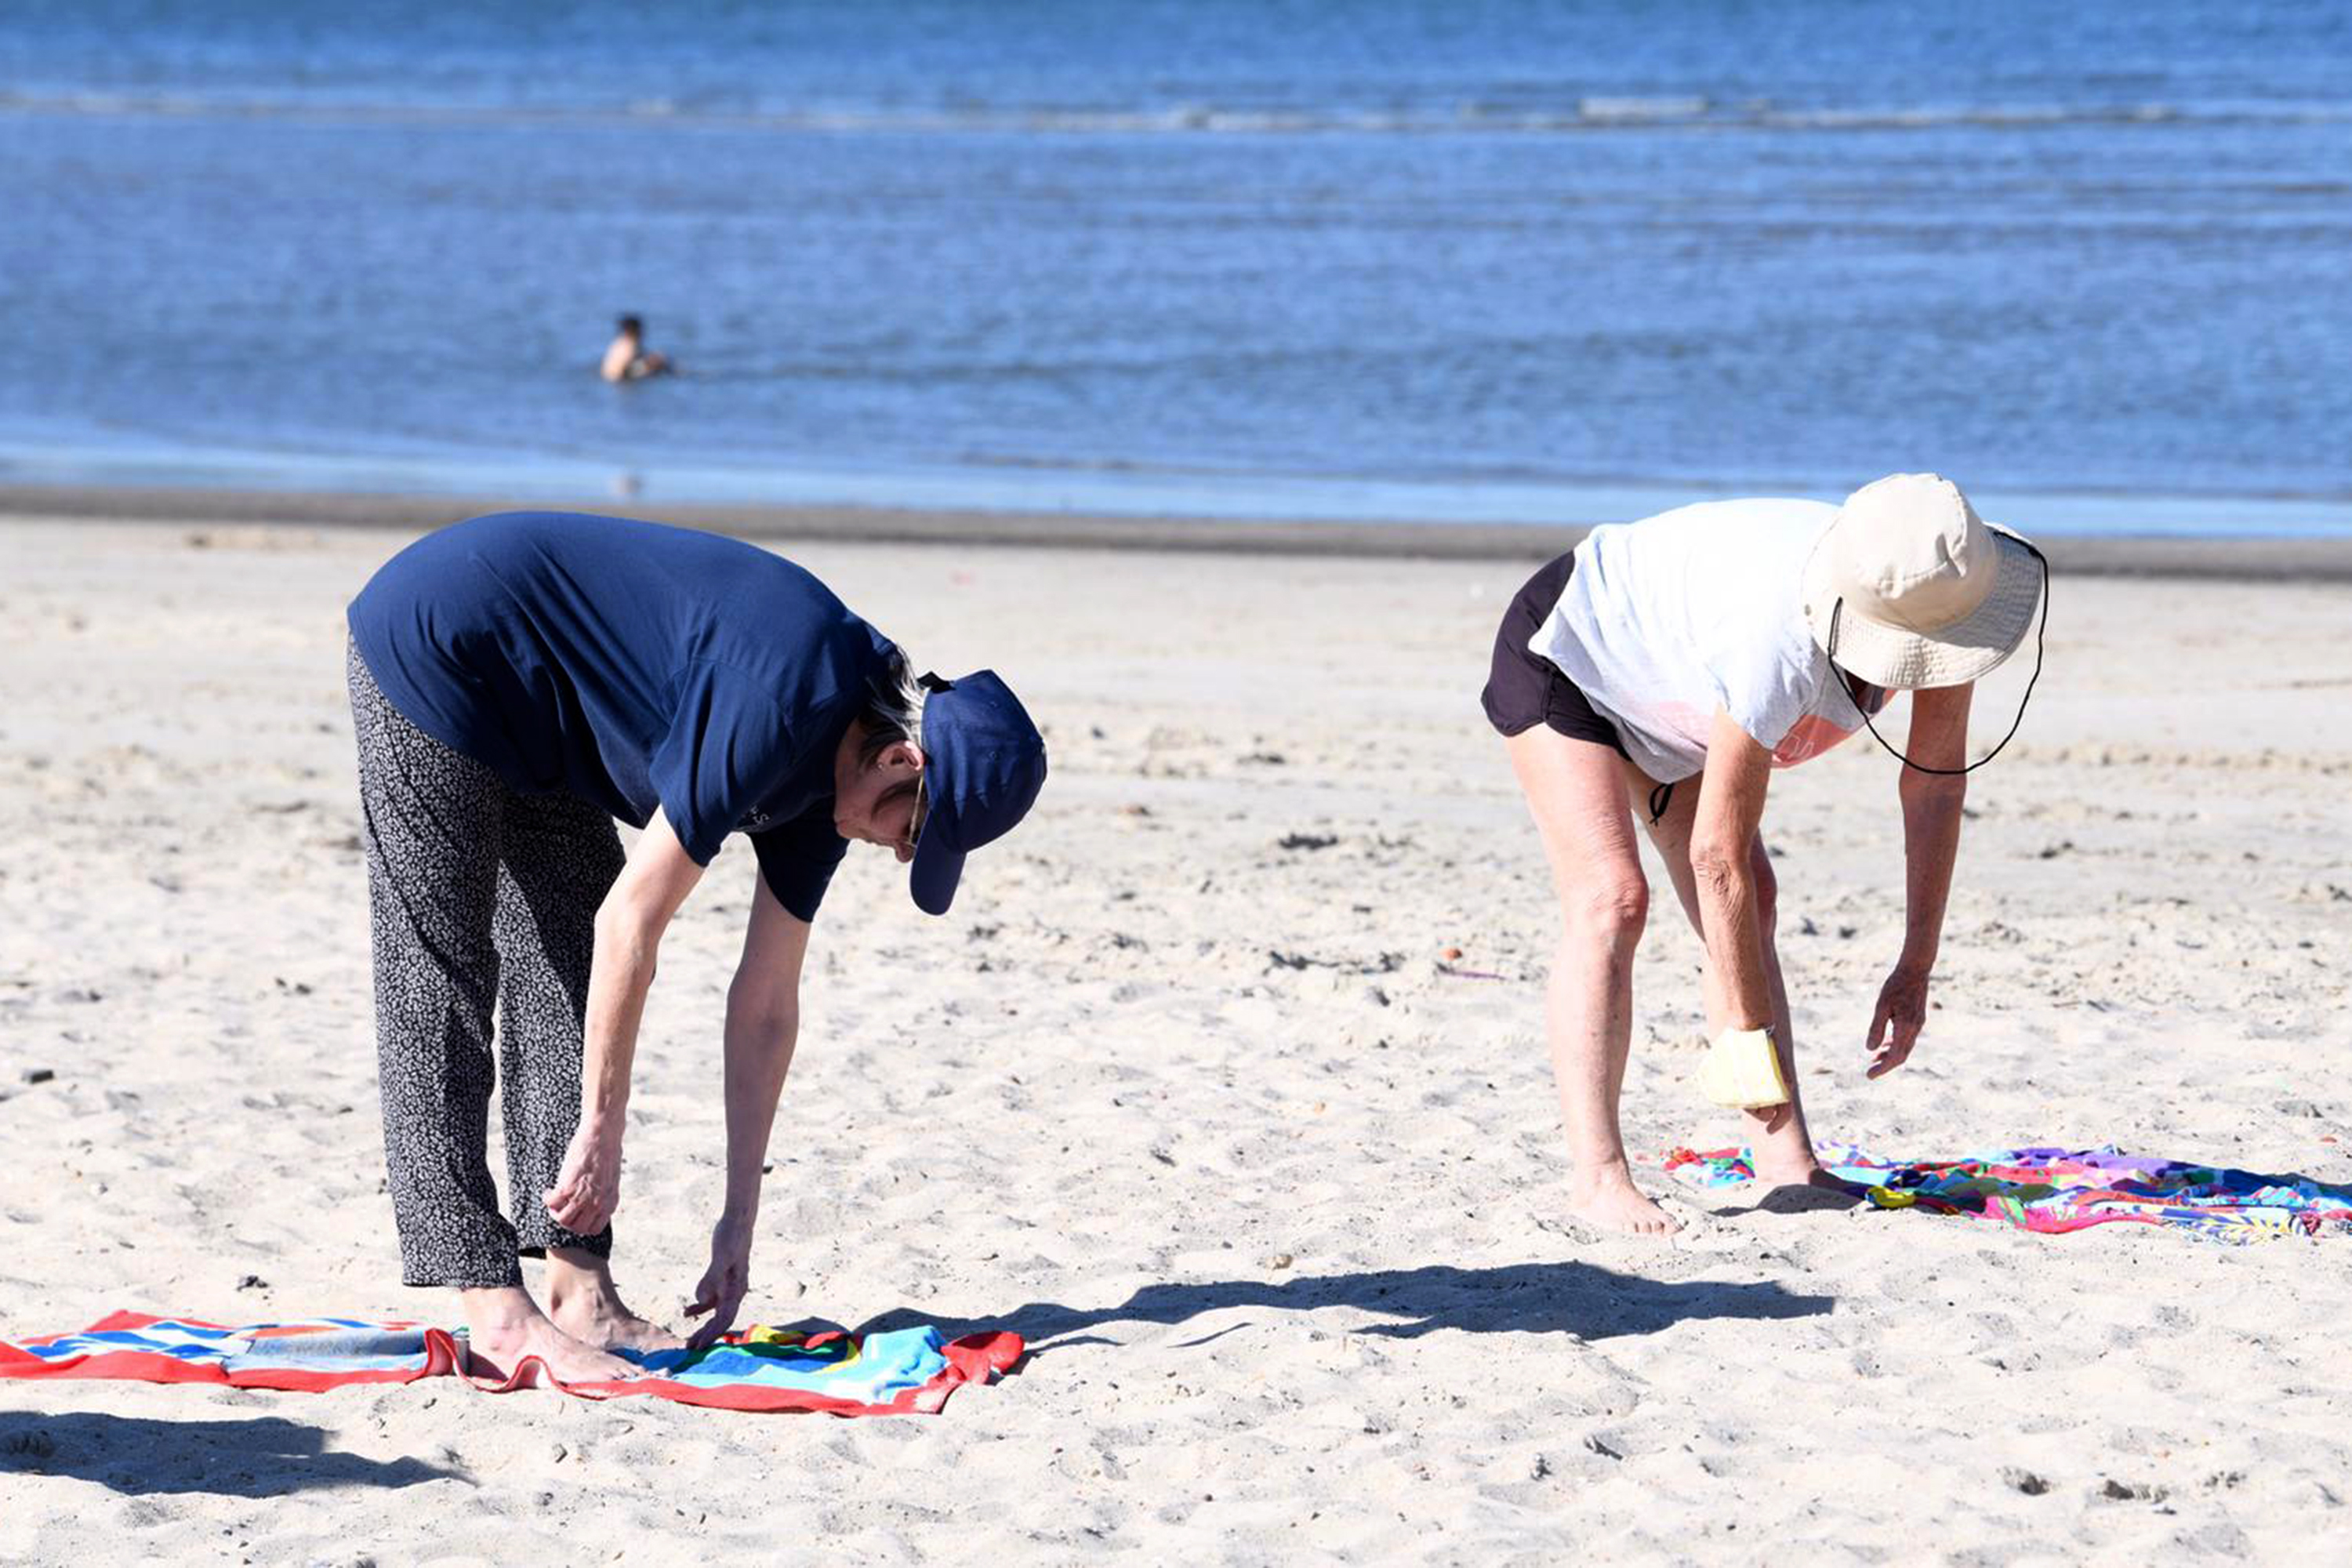 Actividades deportivas en playas